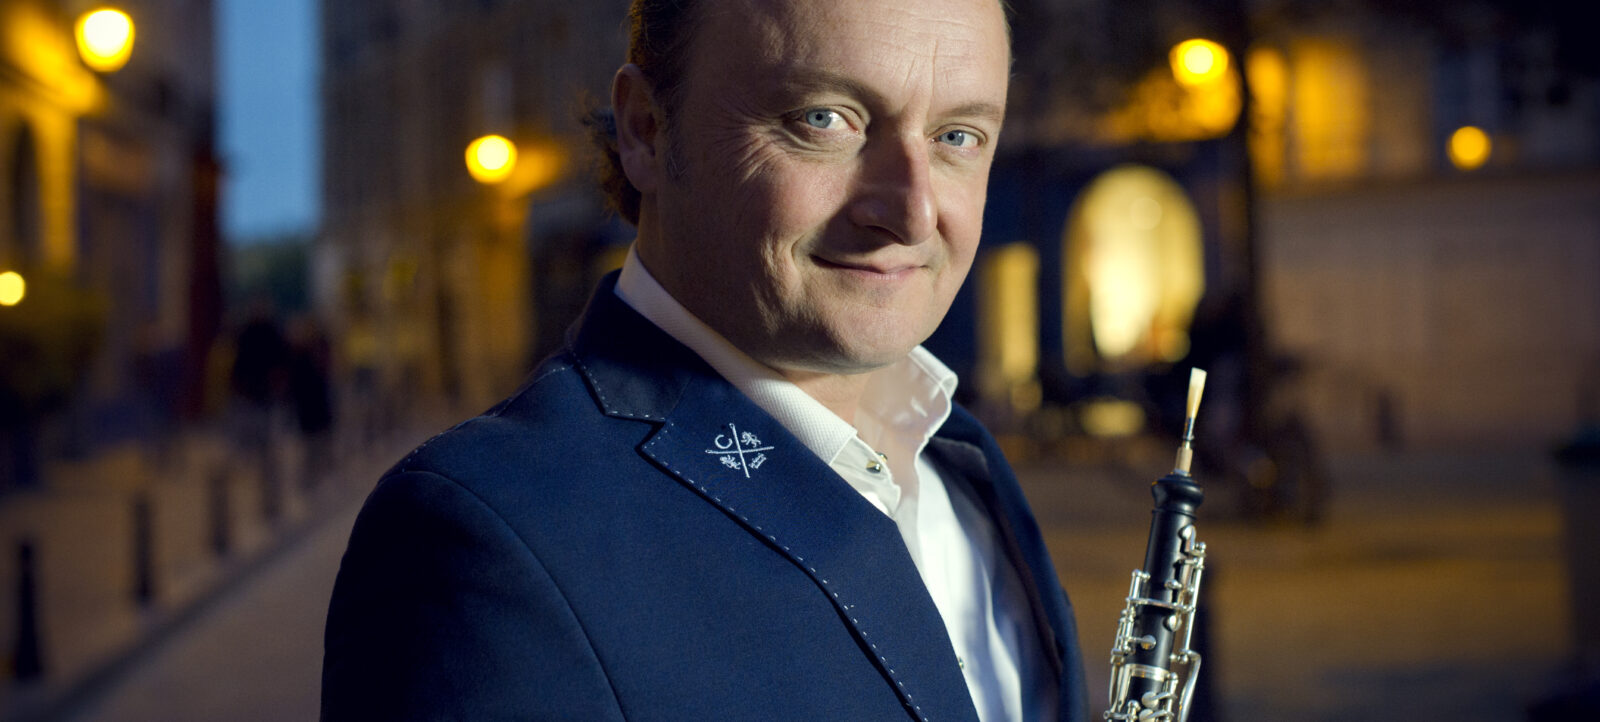 François Leleux és a Nemzeti Filharmonikus Zenekar hangversenye a Zeneakadémián – online esemény